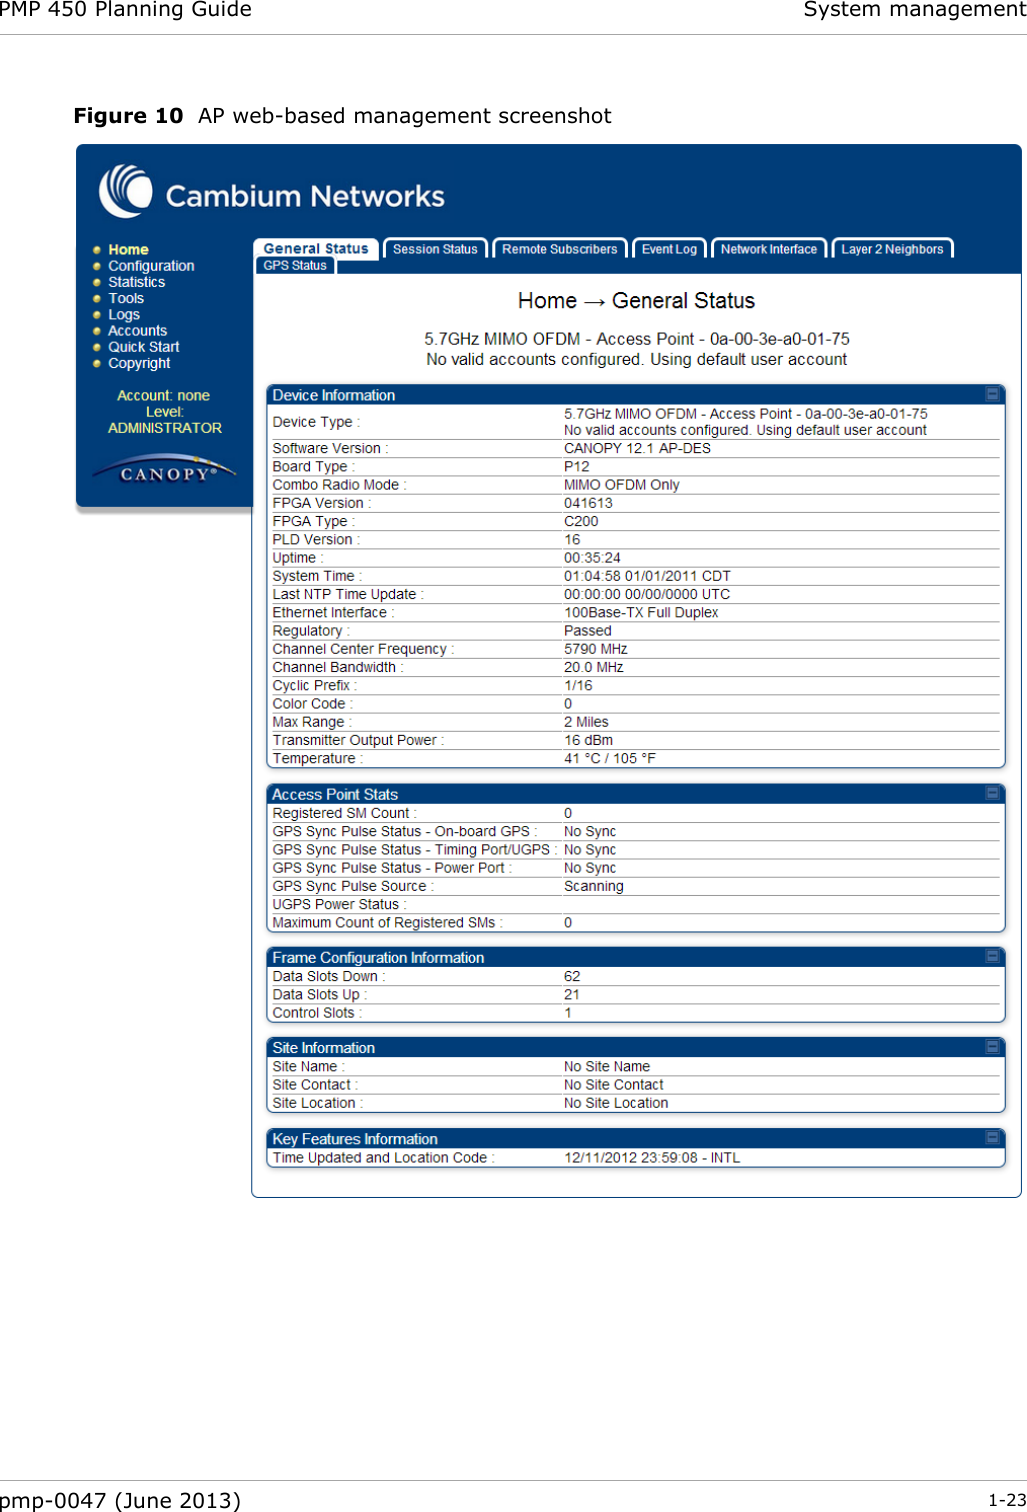 PMP 450 Planning Guide System management  pmp-0047 (June 2013)  1-23  Figure 10  AP web-based management screenshot   